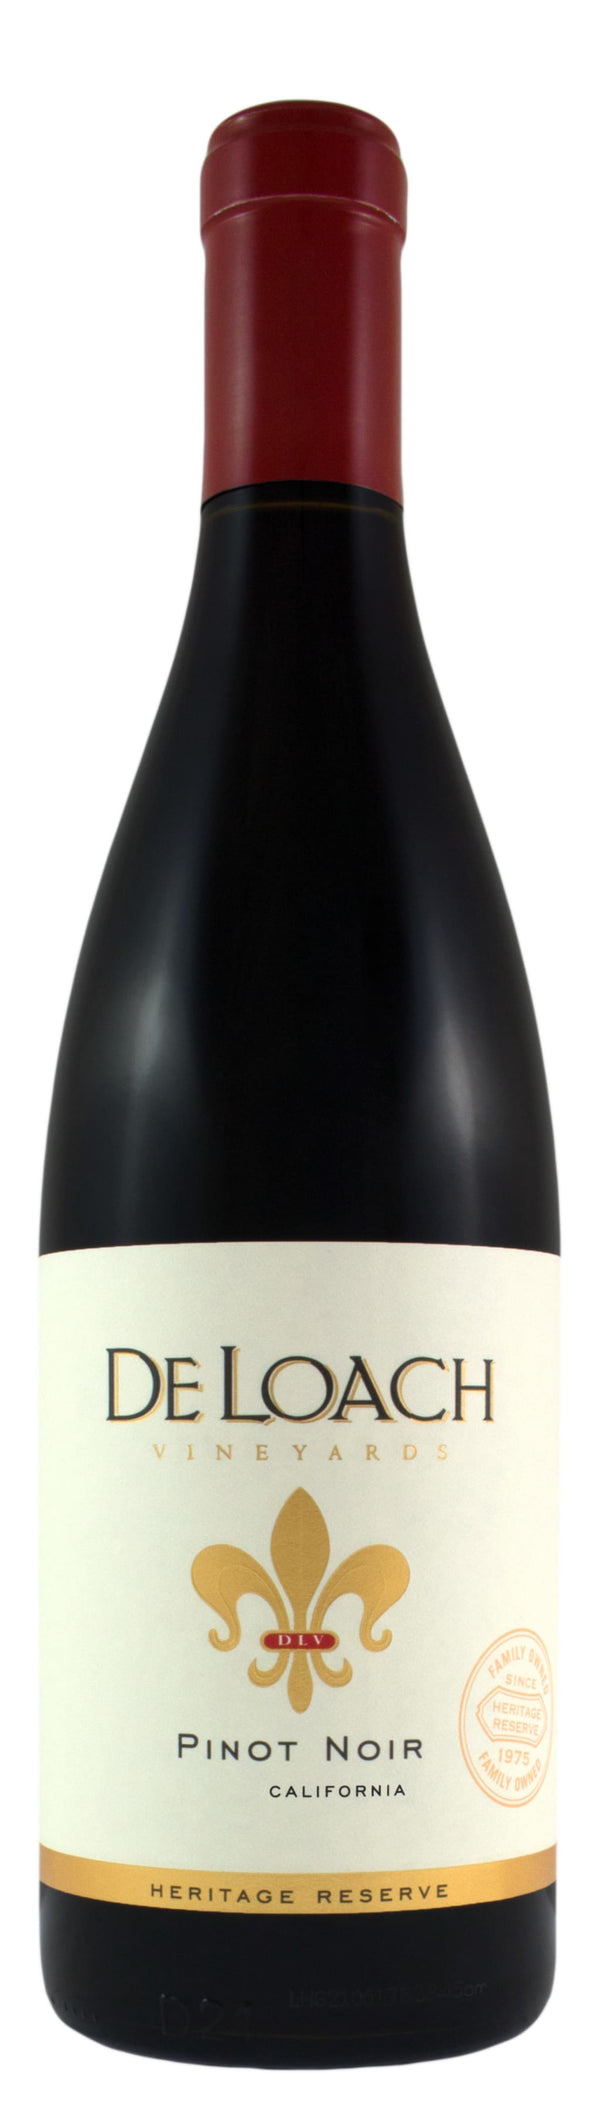 DeLoach Pinot Noir CA